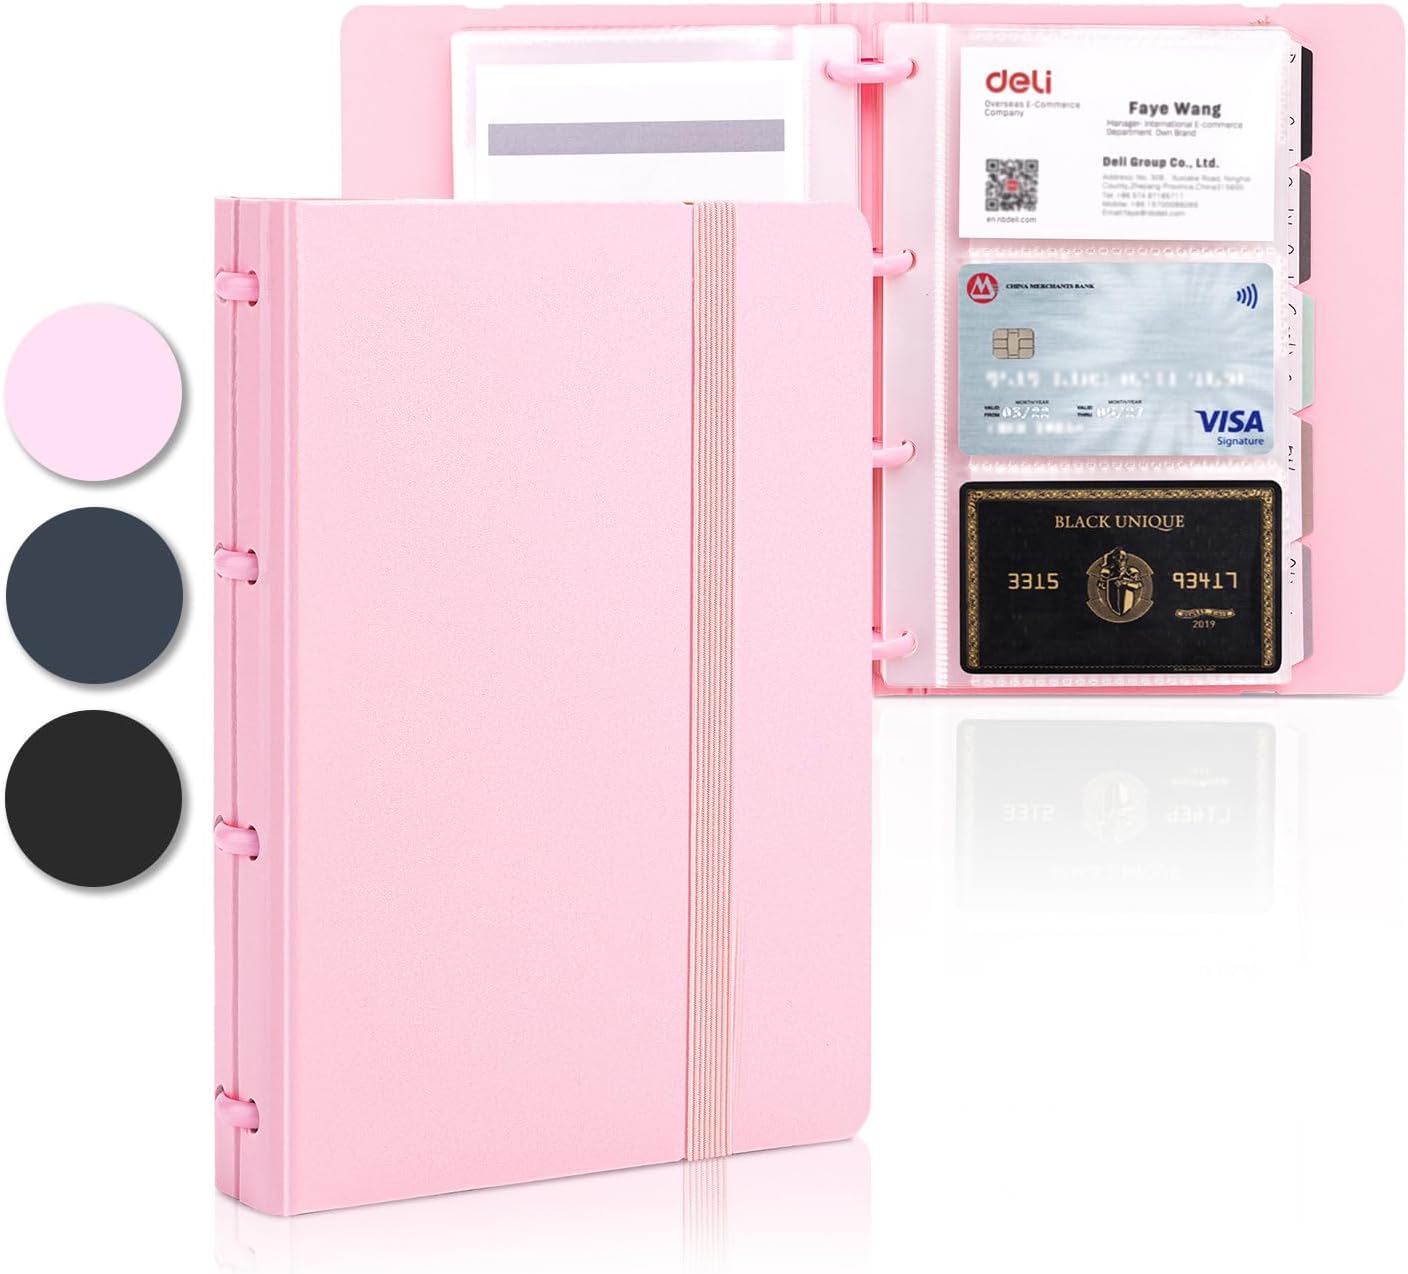 deli Business Card Holder, Credit Card Holder, Rolodex, Business Card Holder Organizer for Women, Hold 180 Cards, Pink